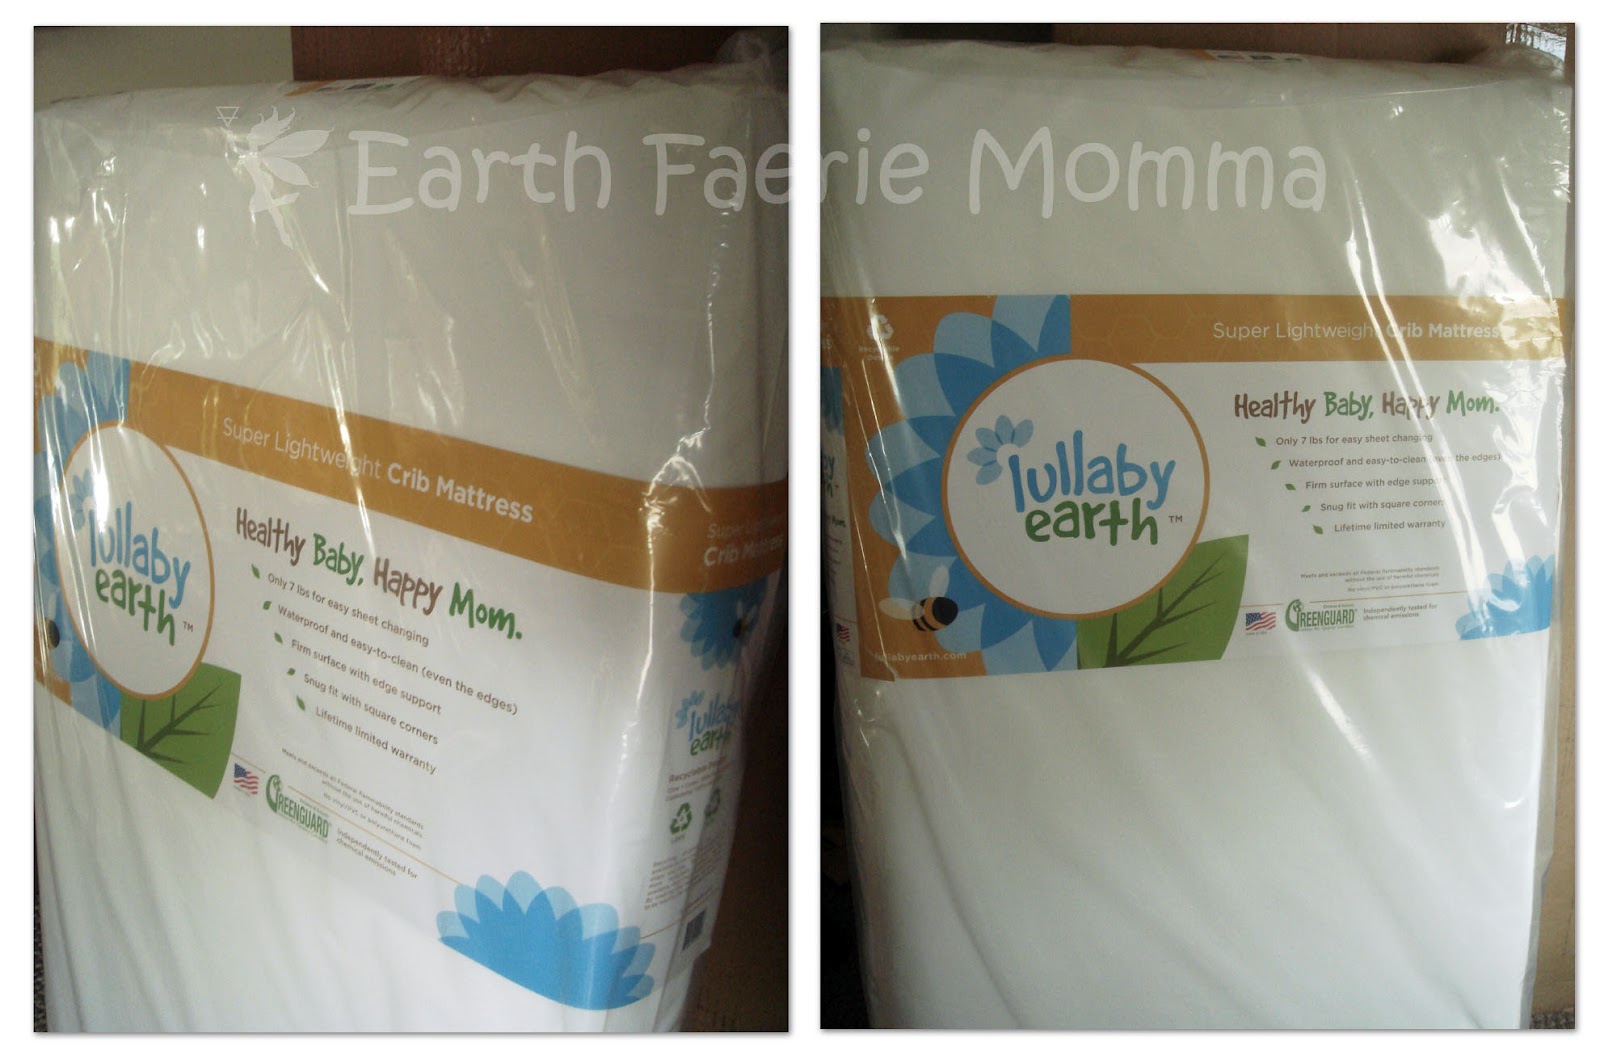 lullaby earth super lightweight crib mattress